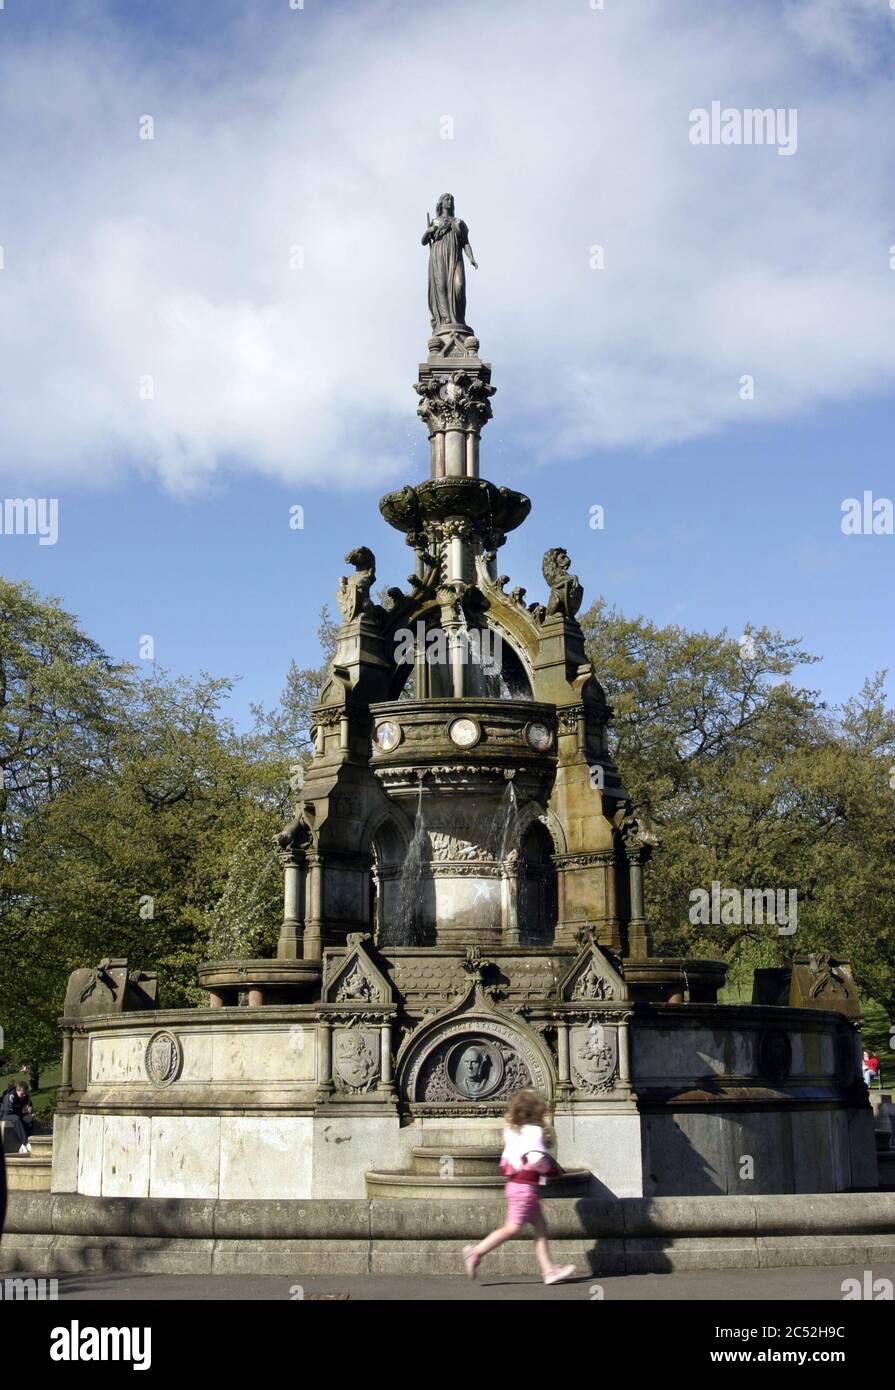 La fontana Stewart Memorial nel parco di Kelvingrove, Glasgow, fu eretta nel 1872 in memoria del Lord Provost Robert Stewart che spianò la strada per una fornitura di acqua dolce alla città di Glasgow. Alan Wylie/ALAMY © Foto Stock